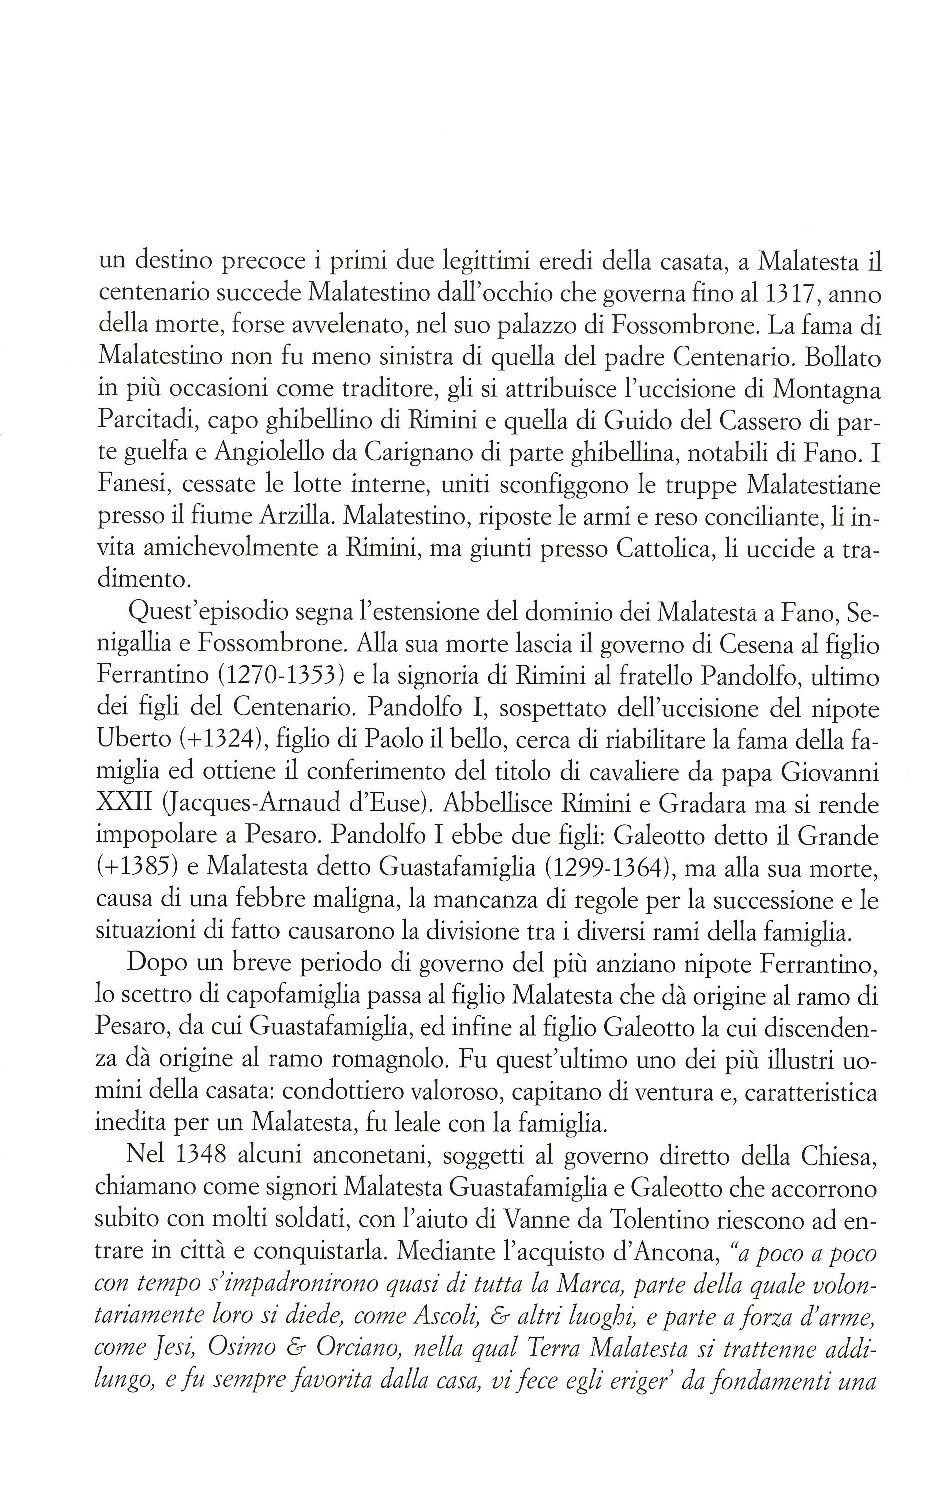 La torr i arduna tutti 2006 p.029